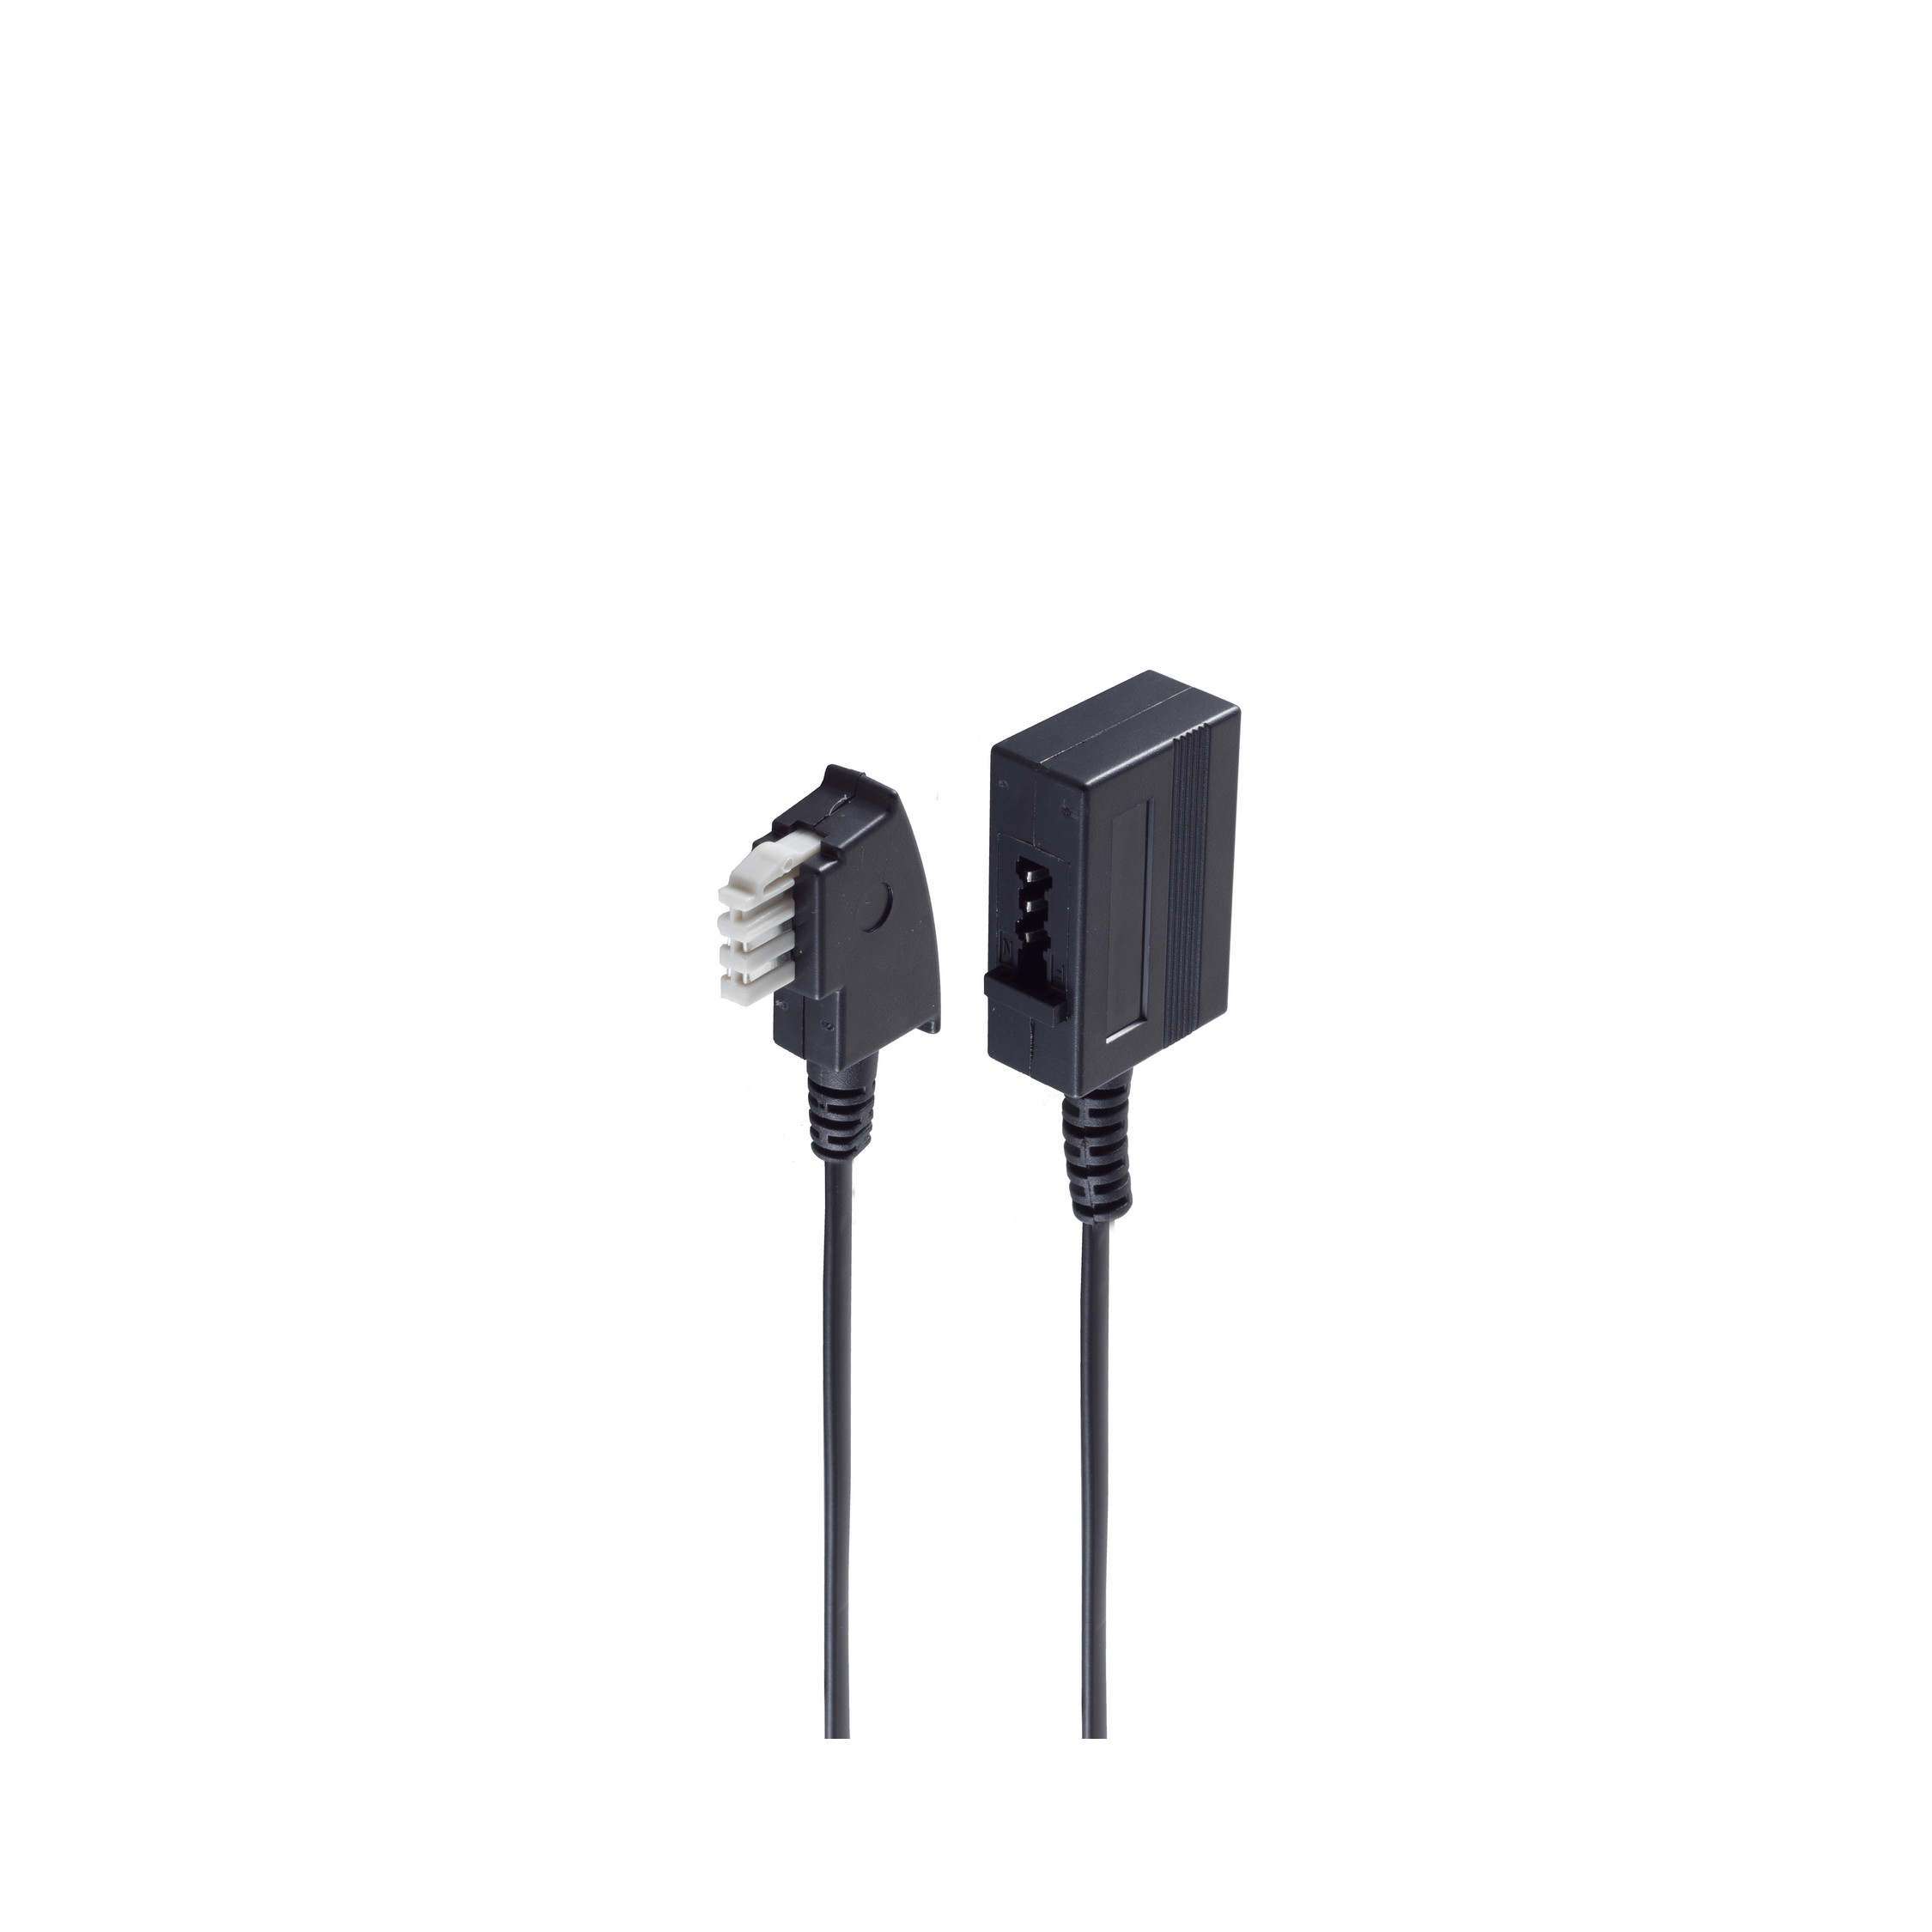 Kabel N-Stecker ISDN TAE / SHIVERPEAKS schwarz 15m 4-adrig TAE N-Kupplung TAE